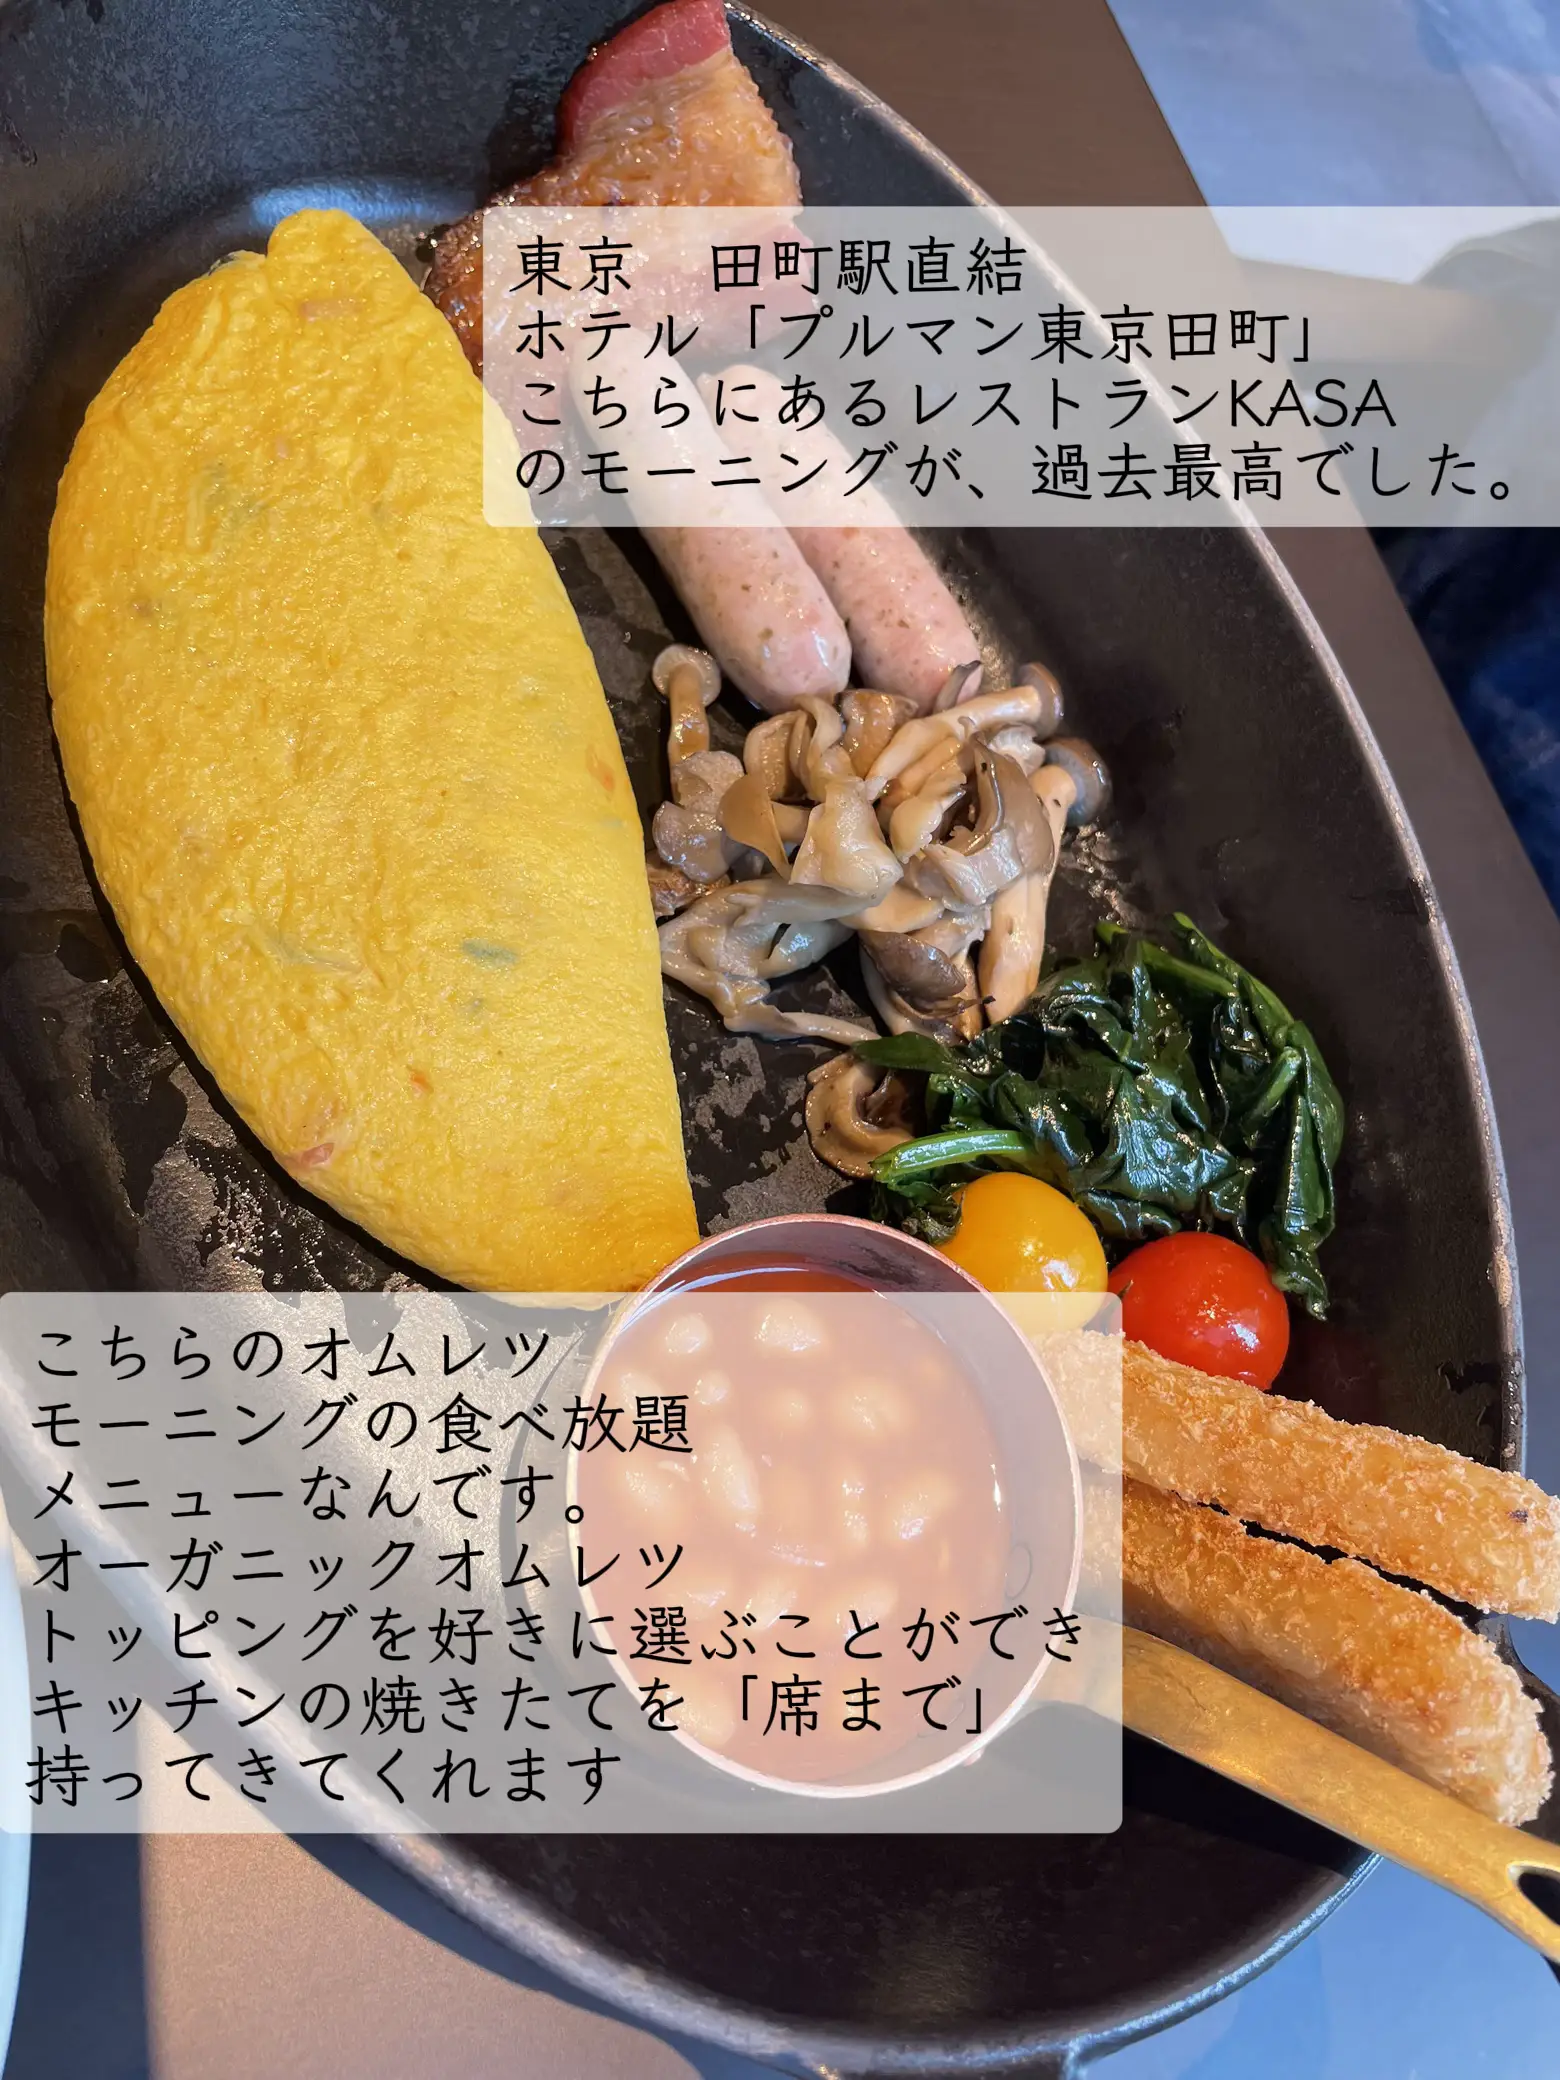 パンケーキ食べ放題 東京 - Lemon8検索